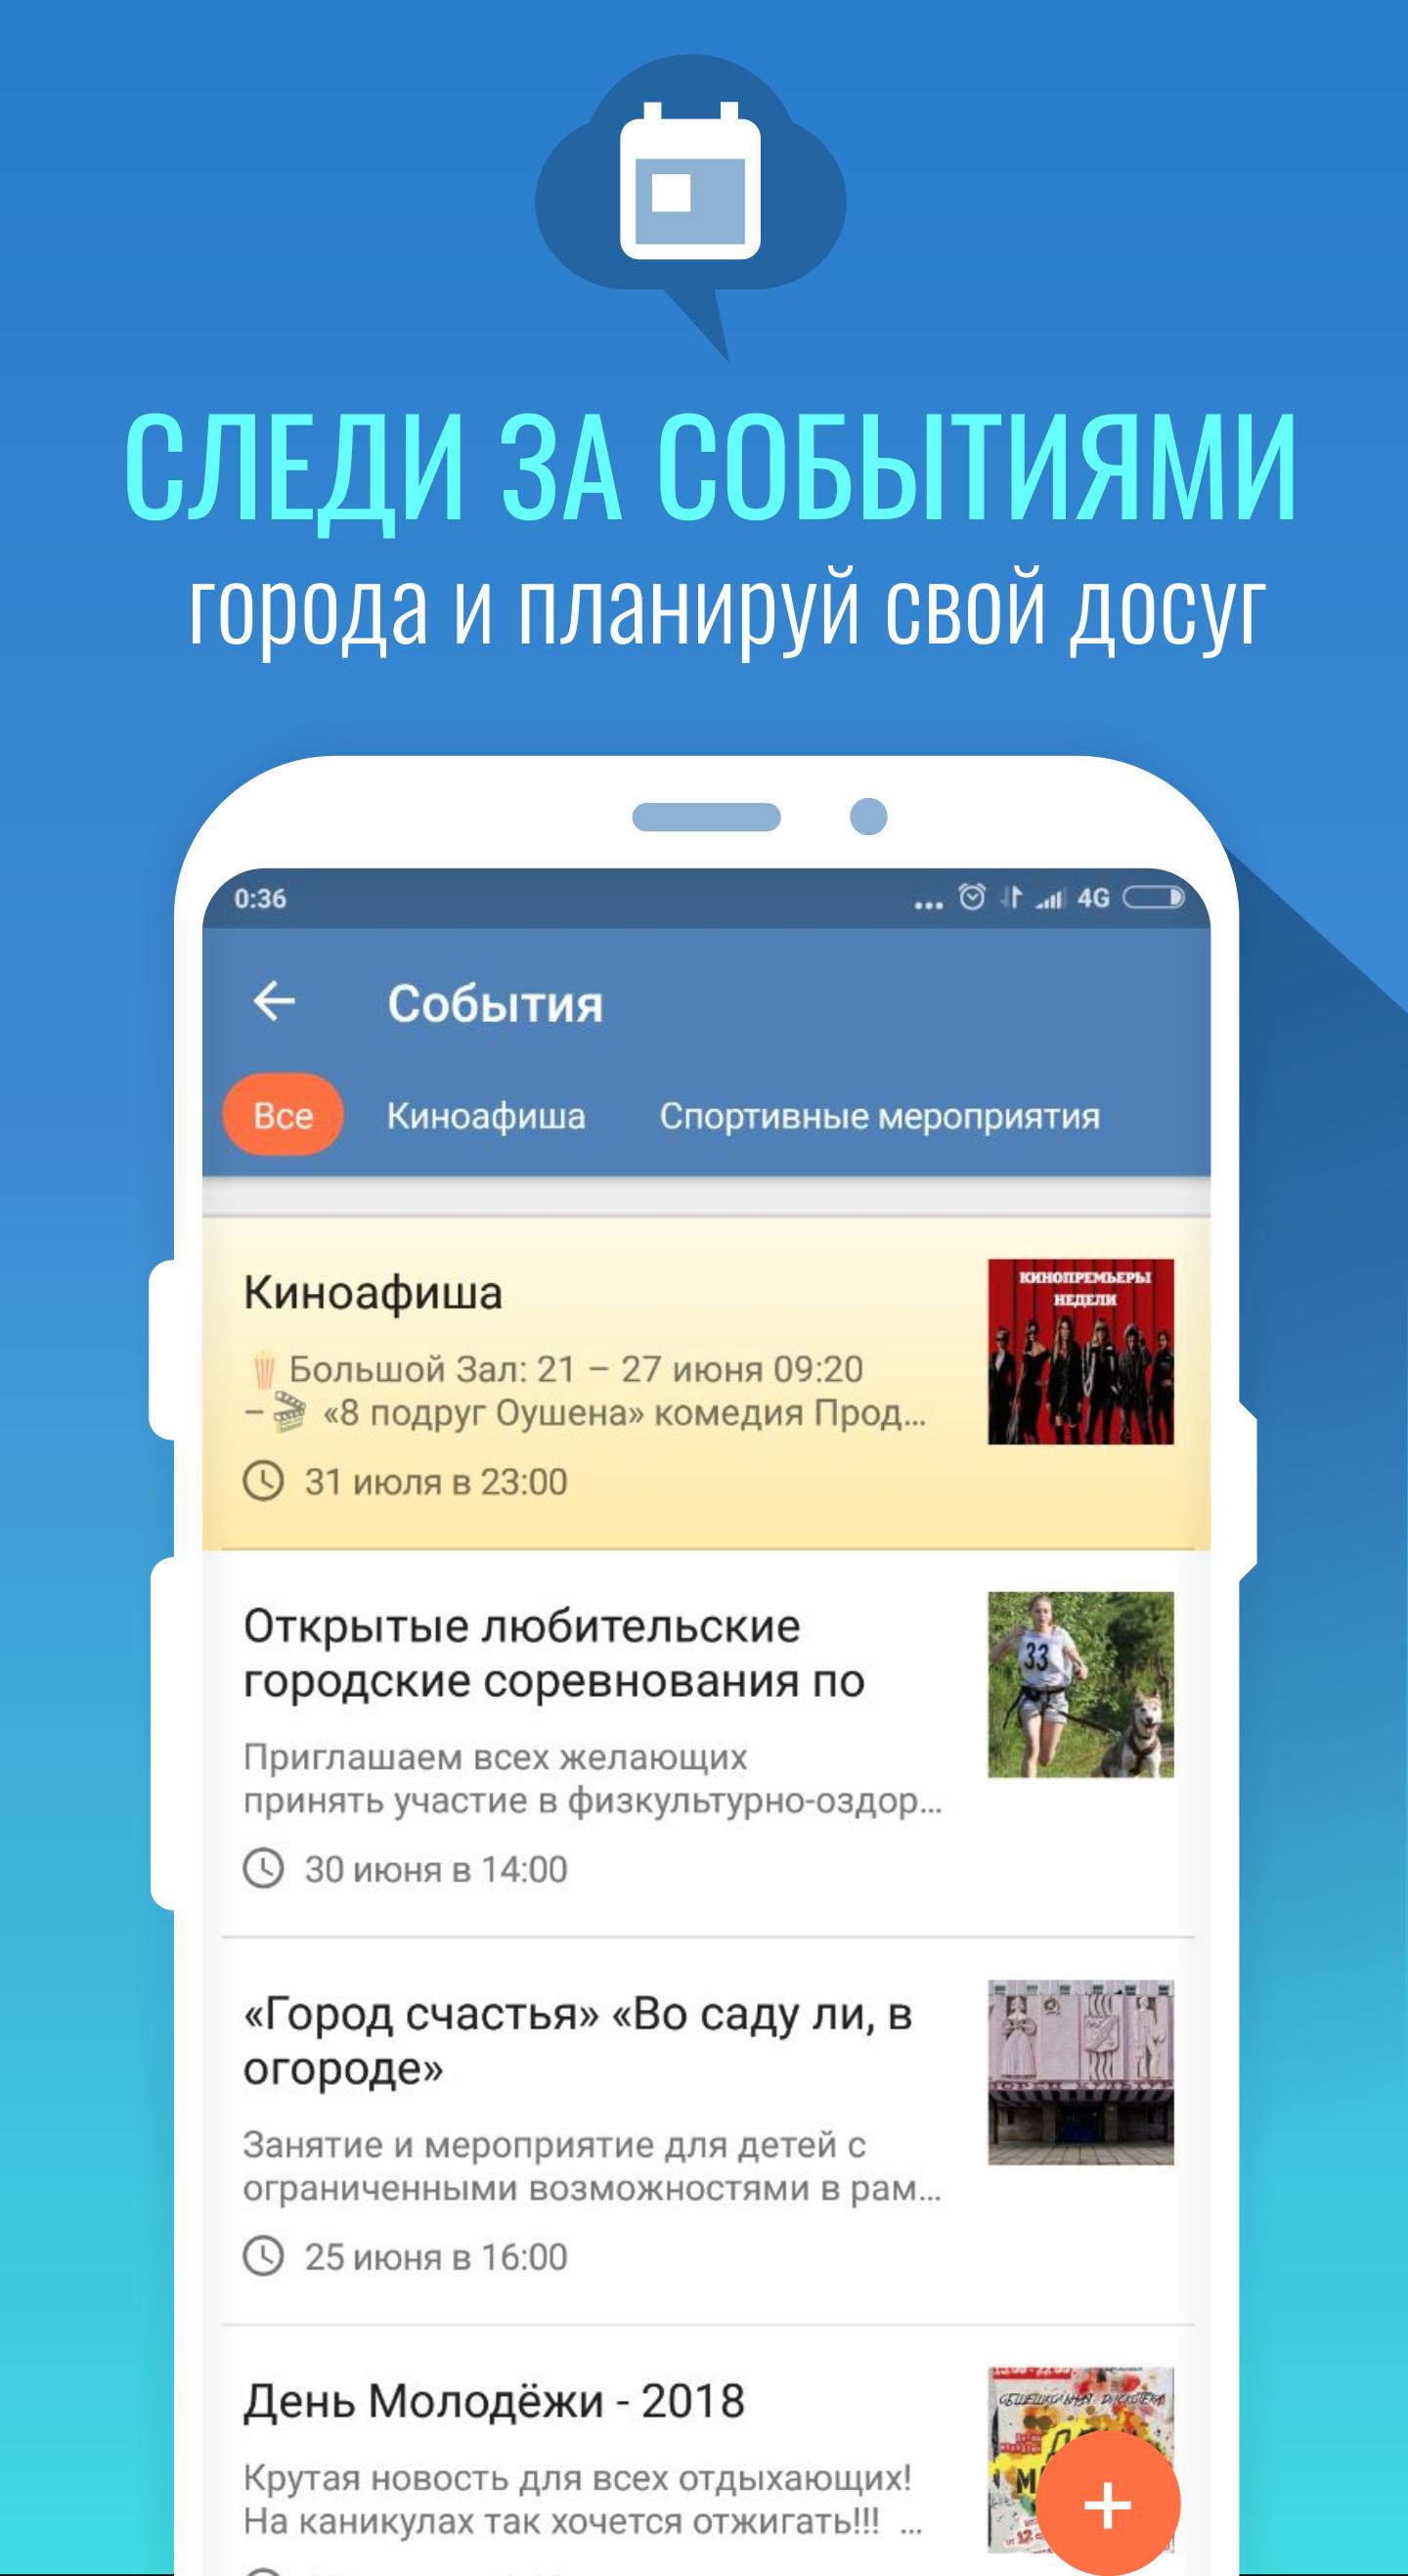 МойГород форумы, отзывы, события и новости города 2.4.13 Screenshot 5